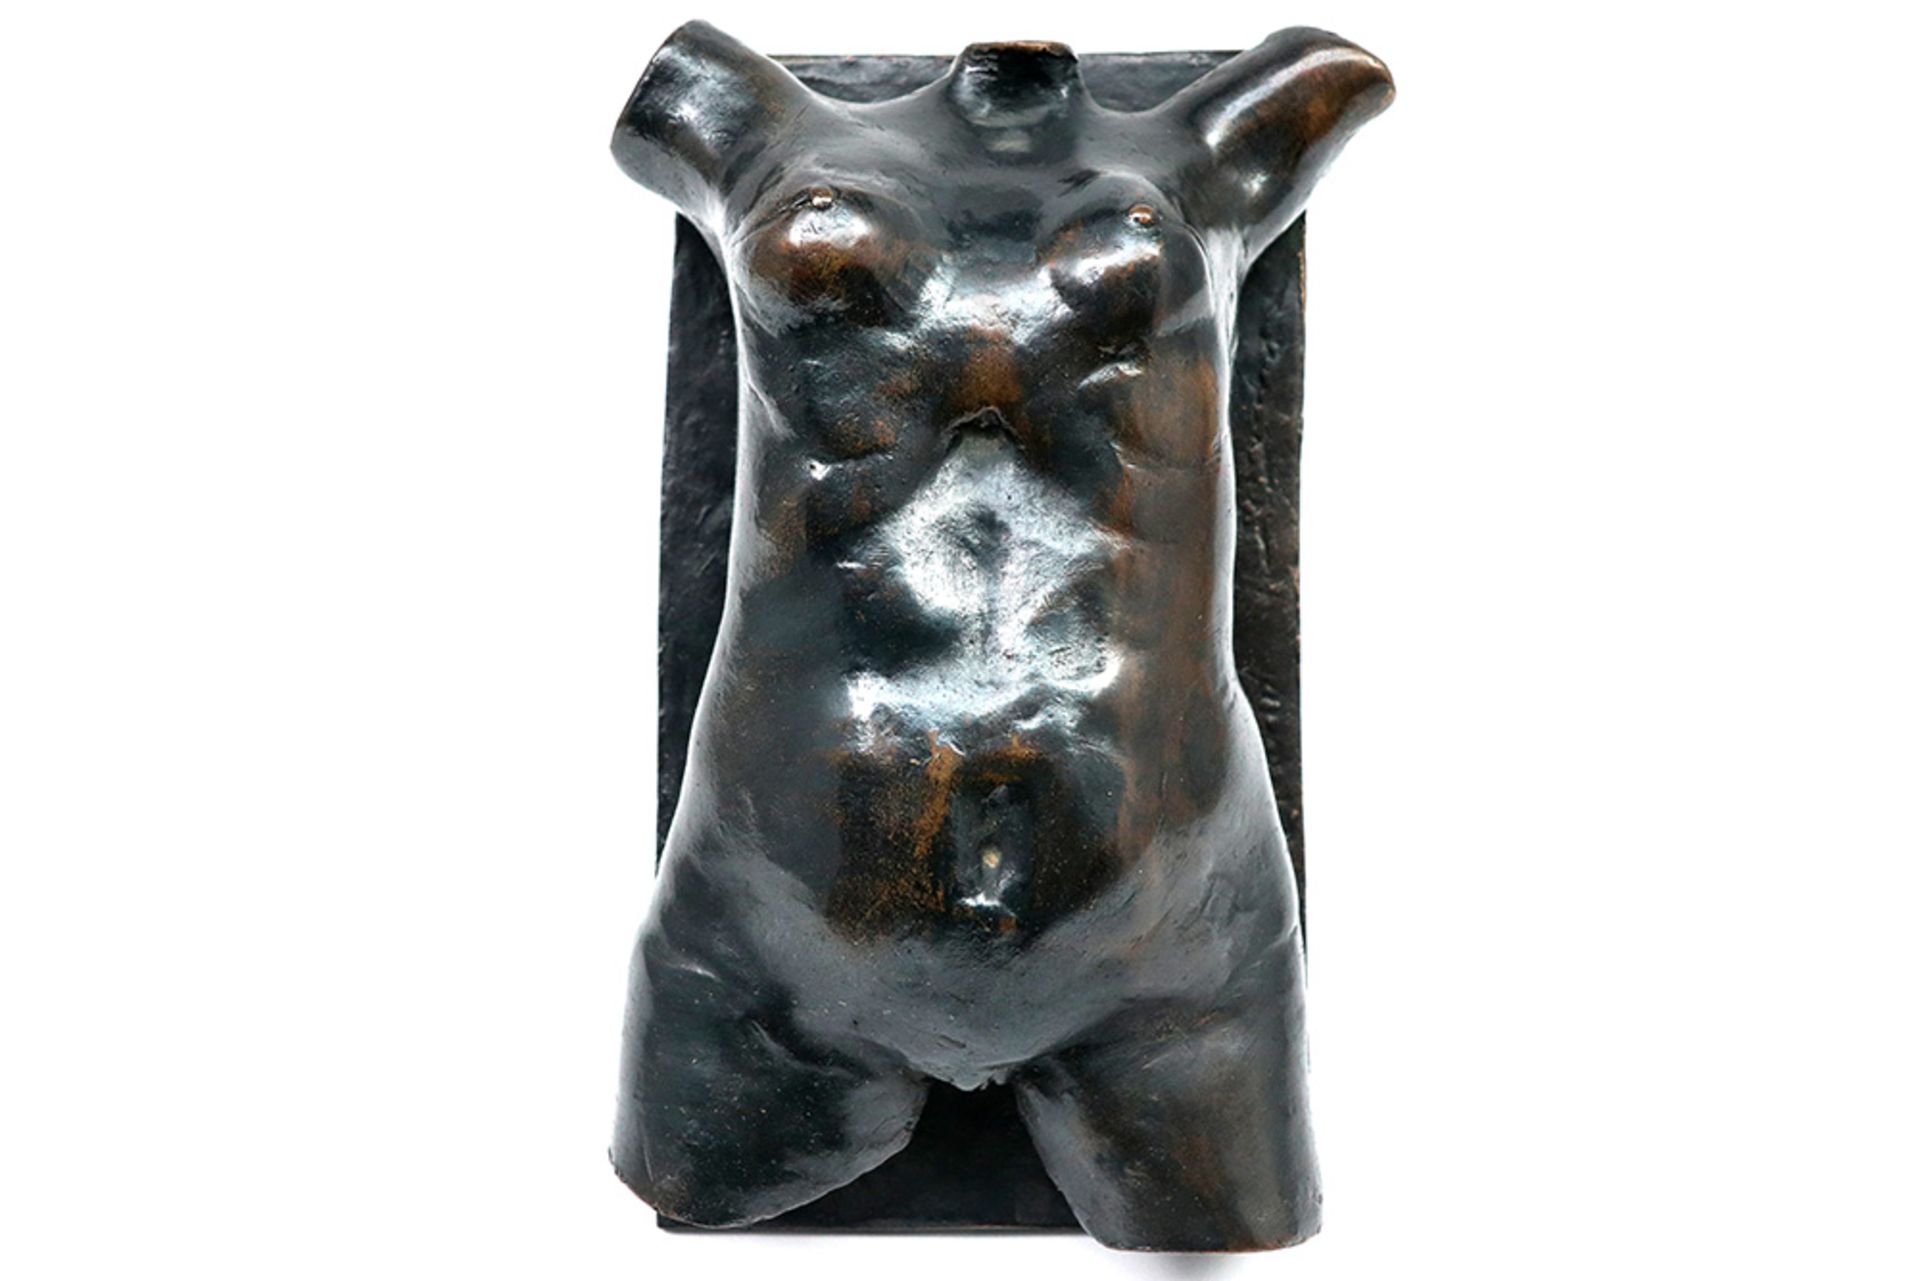 20th Cent. Maurice Frydman "female torso" sculpture in bronze - signed on the back || FRYDMAN